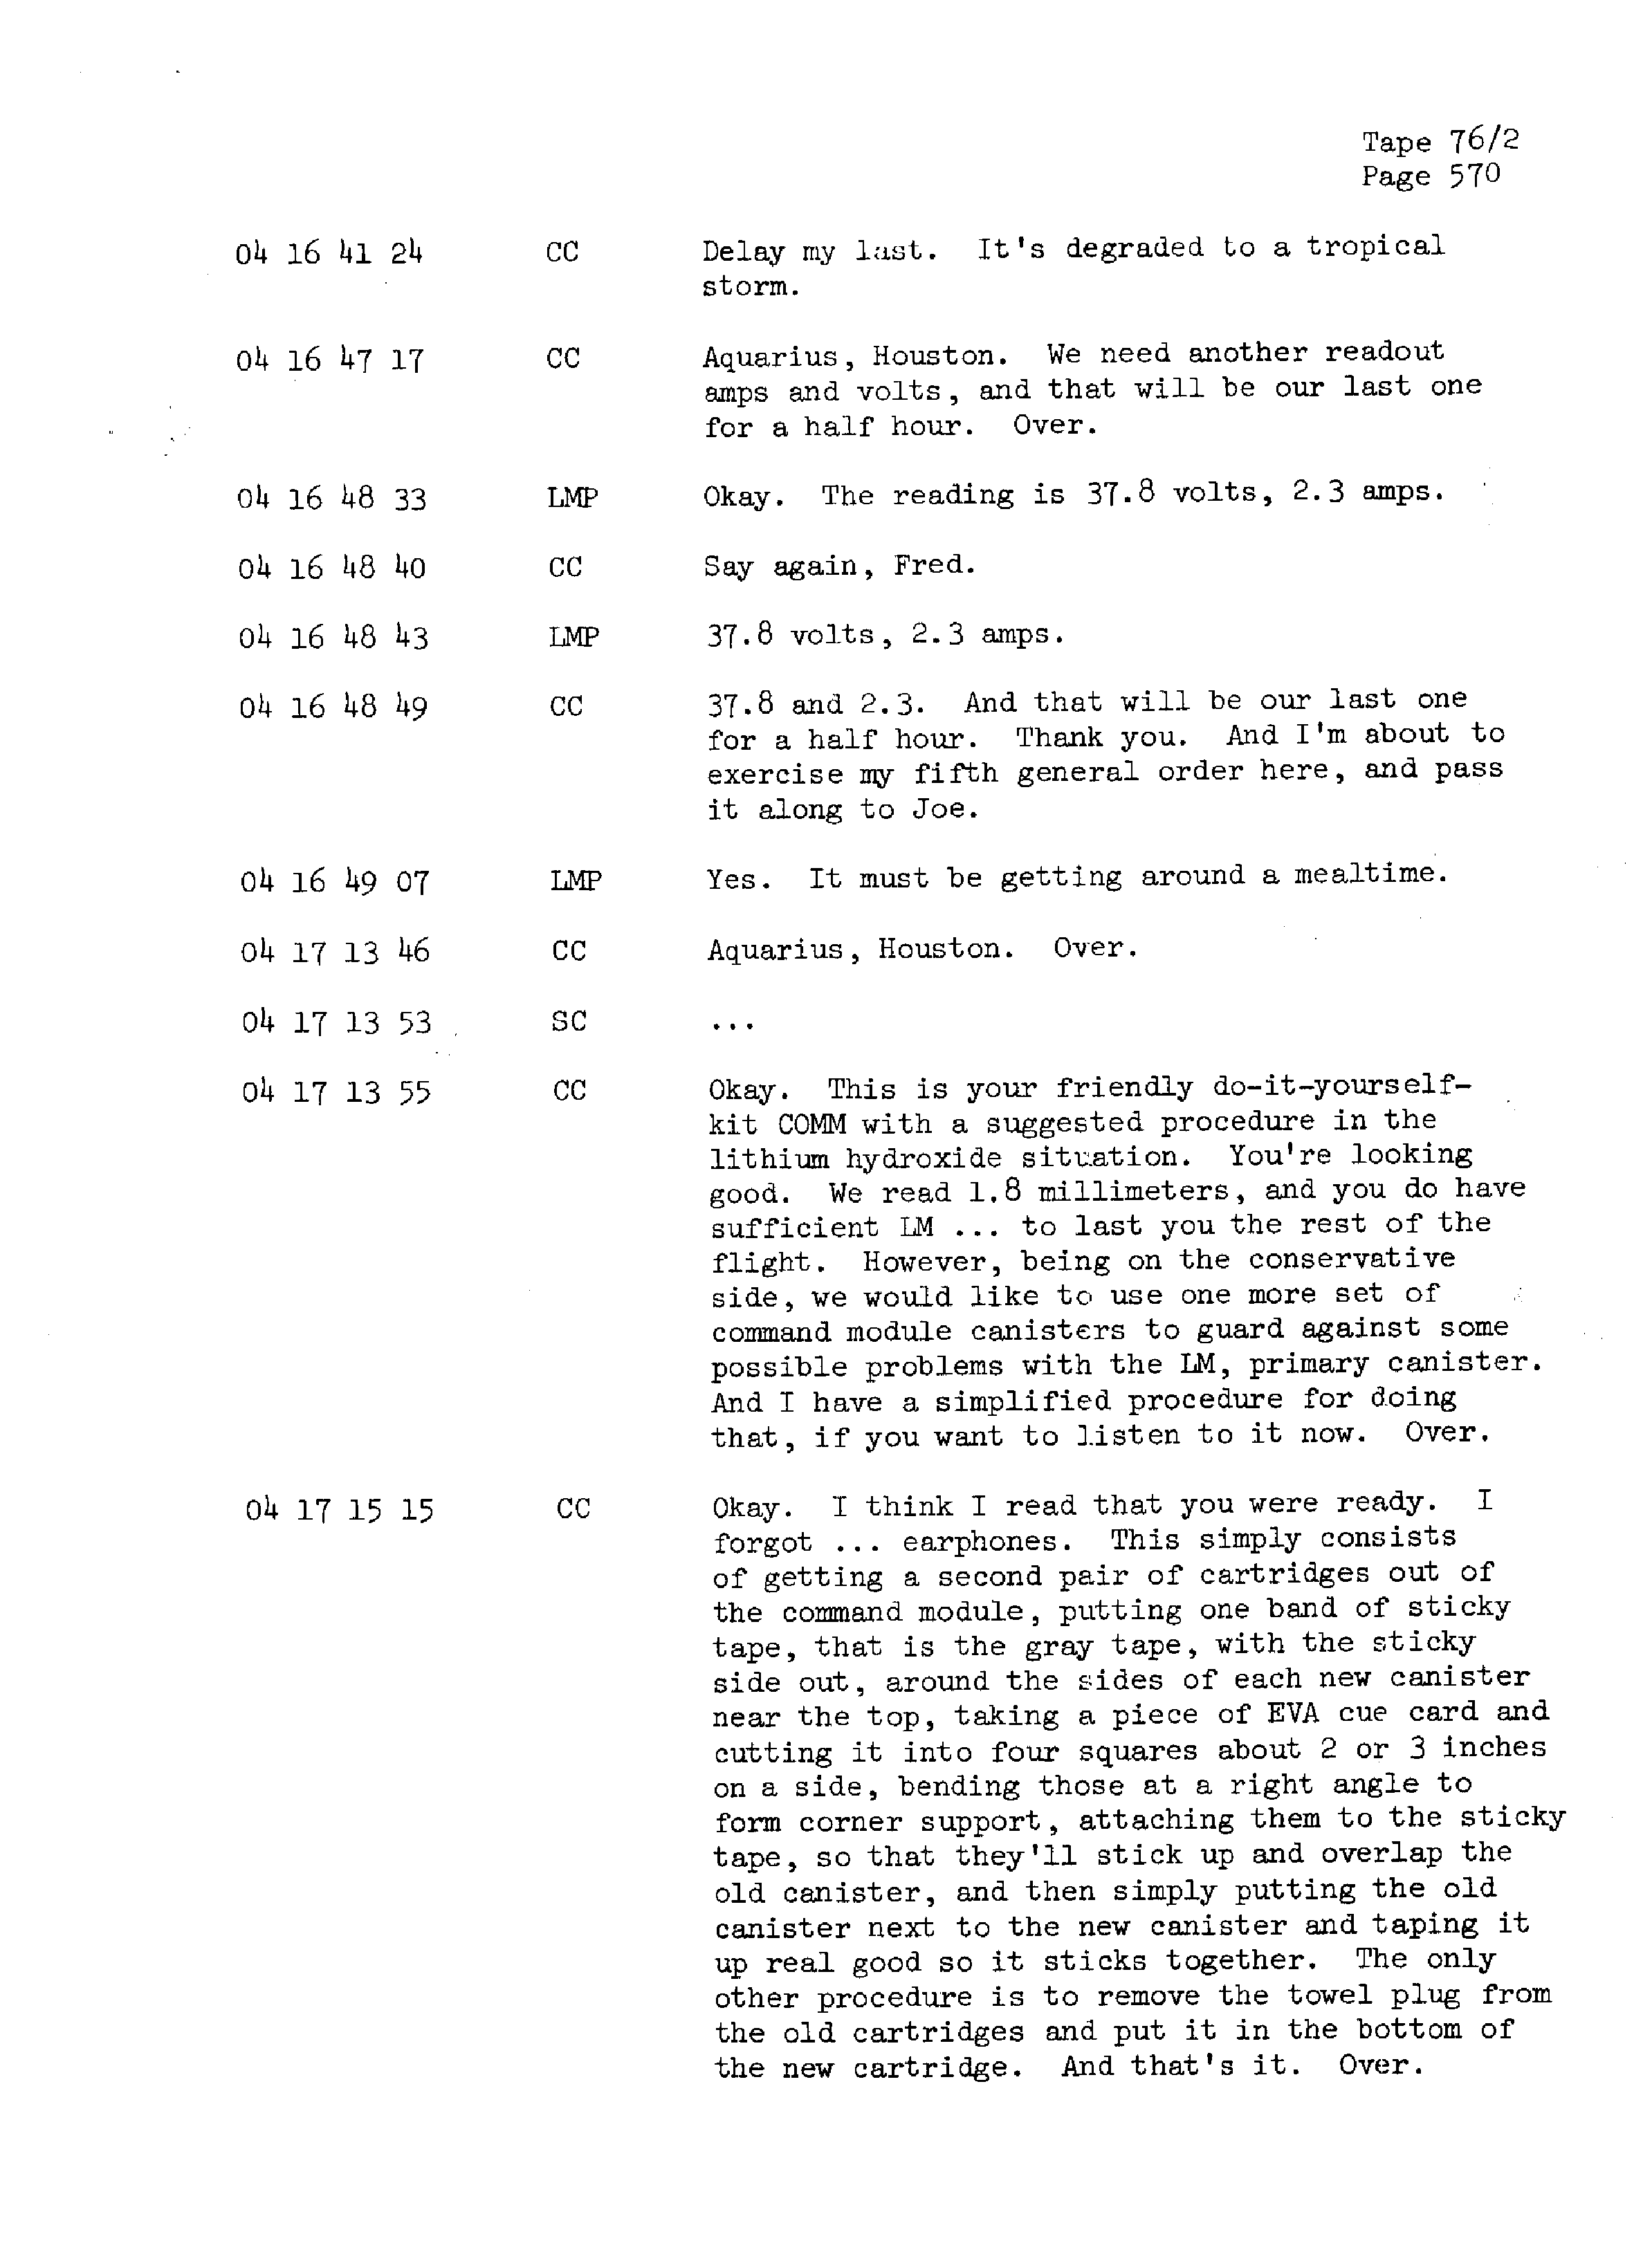 Page 577 of Apollo 13’s original transcript